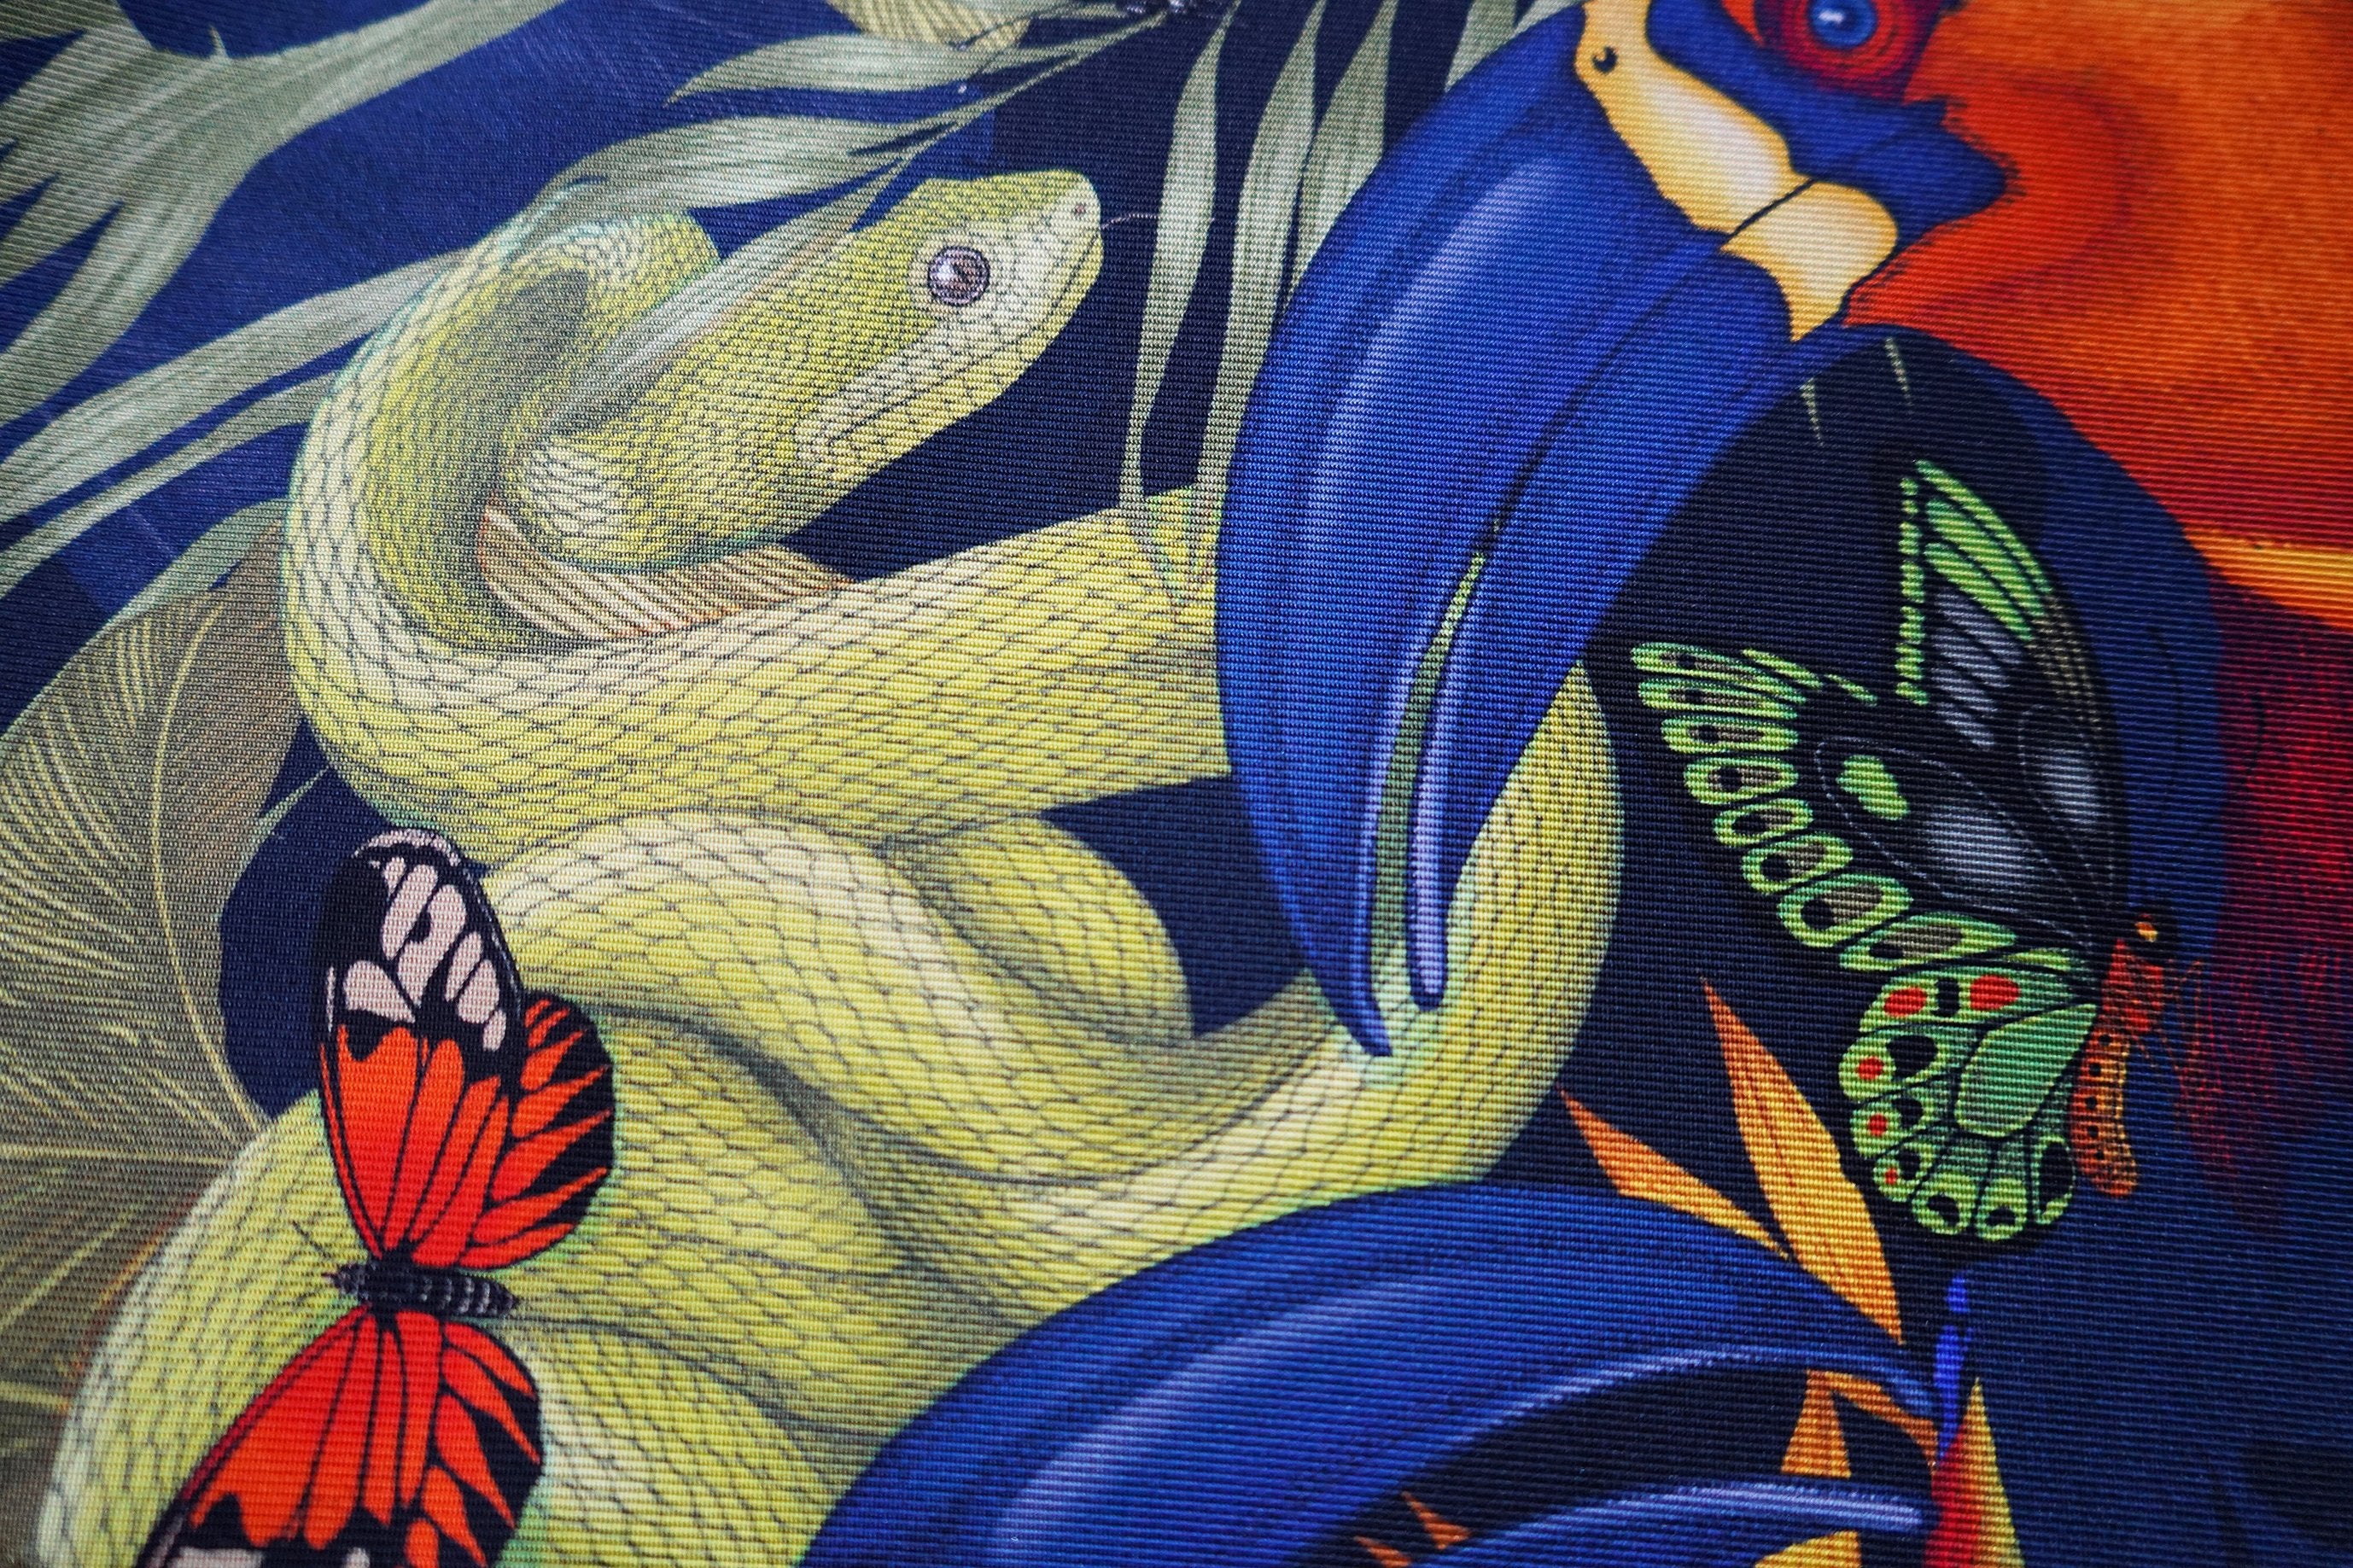 The Tropical Toucan Cushion Set | 45x45cm | Silk